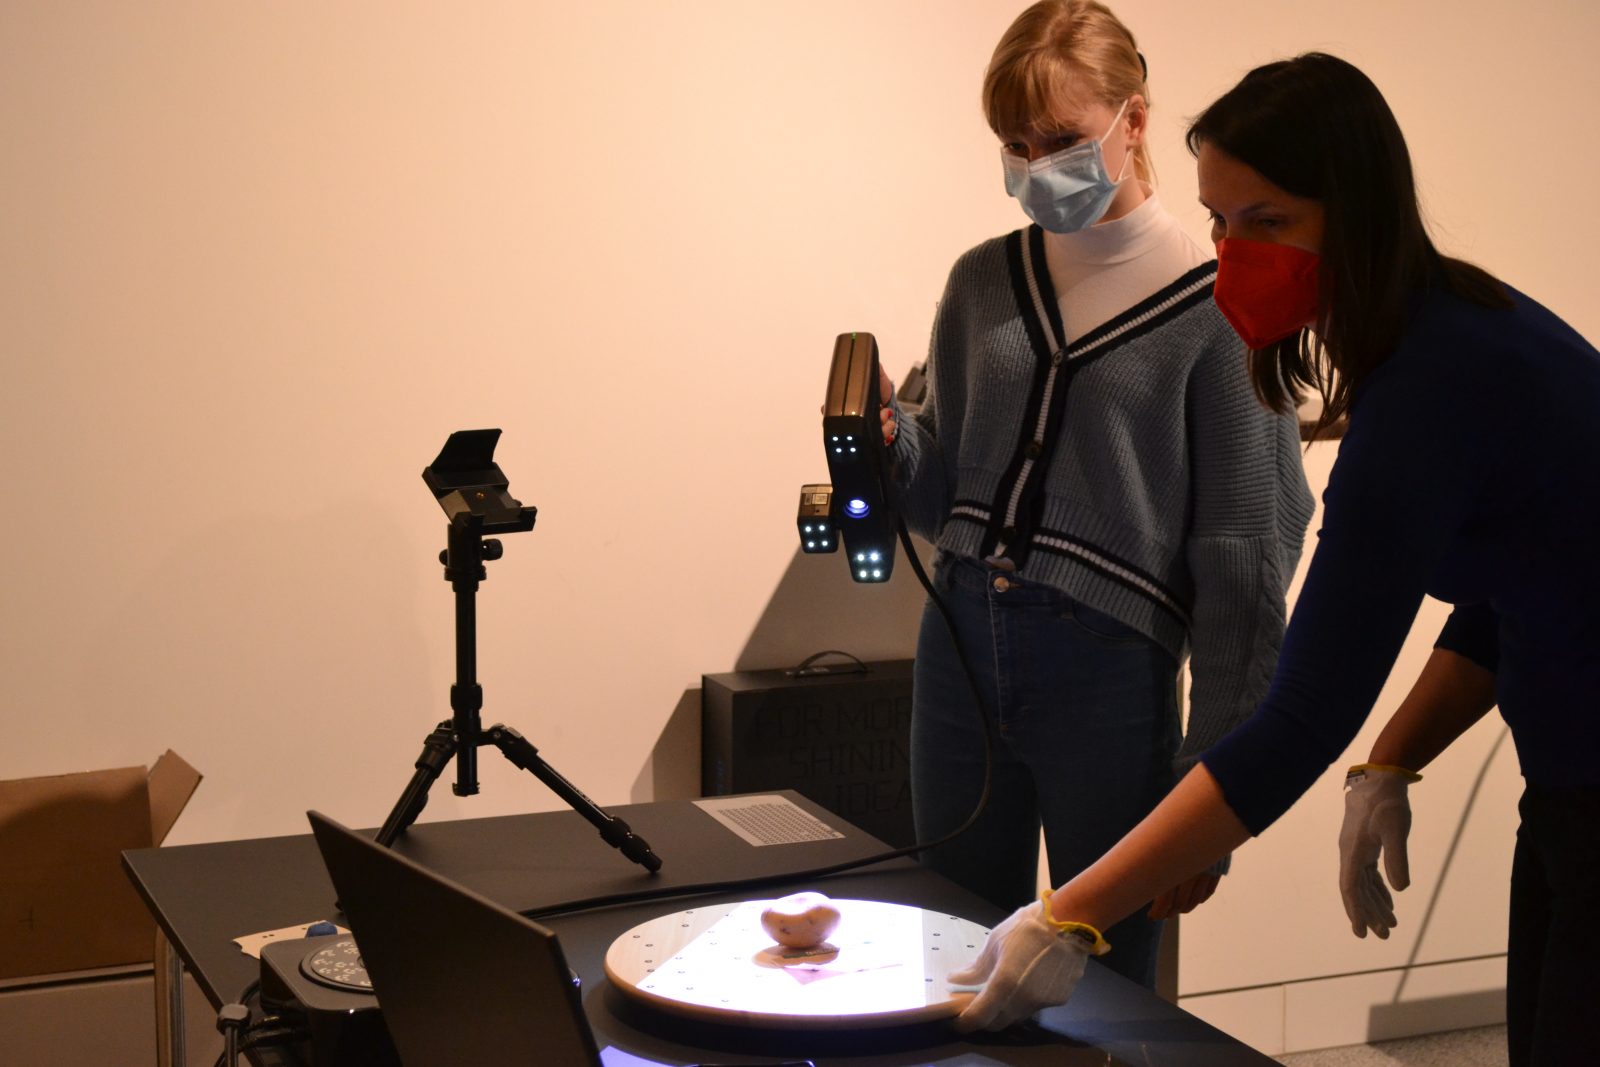 Zwei Personen scannen zusammen ein Objekt. Die Schülerin richtet dabei den Handscanner auf das Objekt, der Lichtstrahl ist zu sehen.